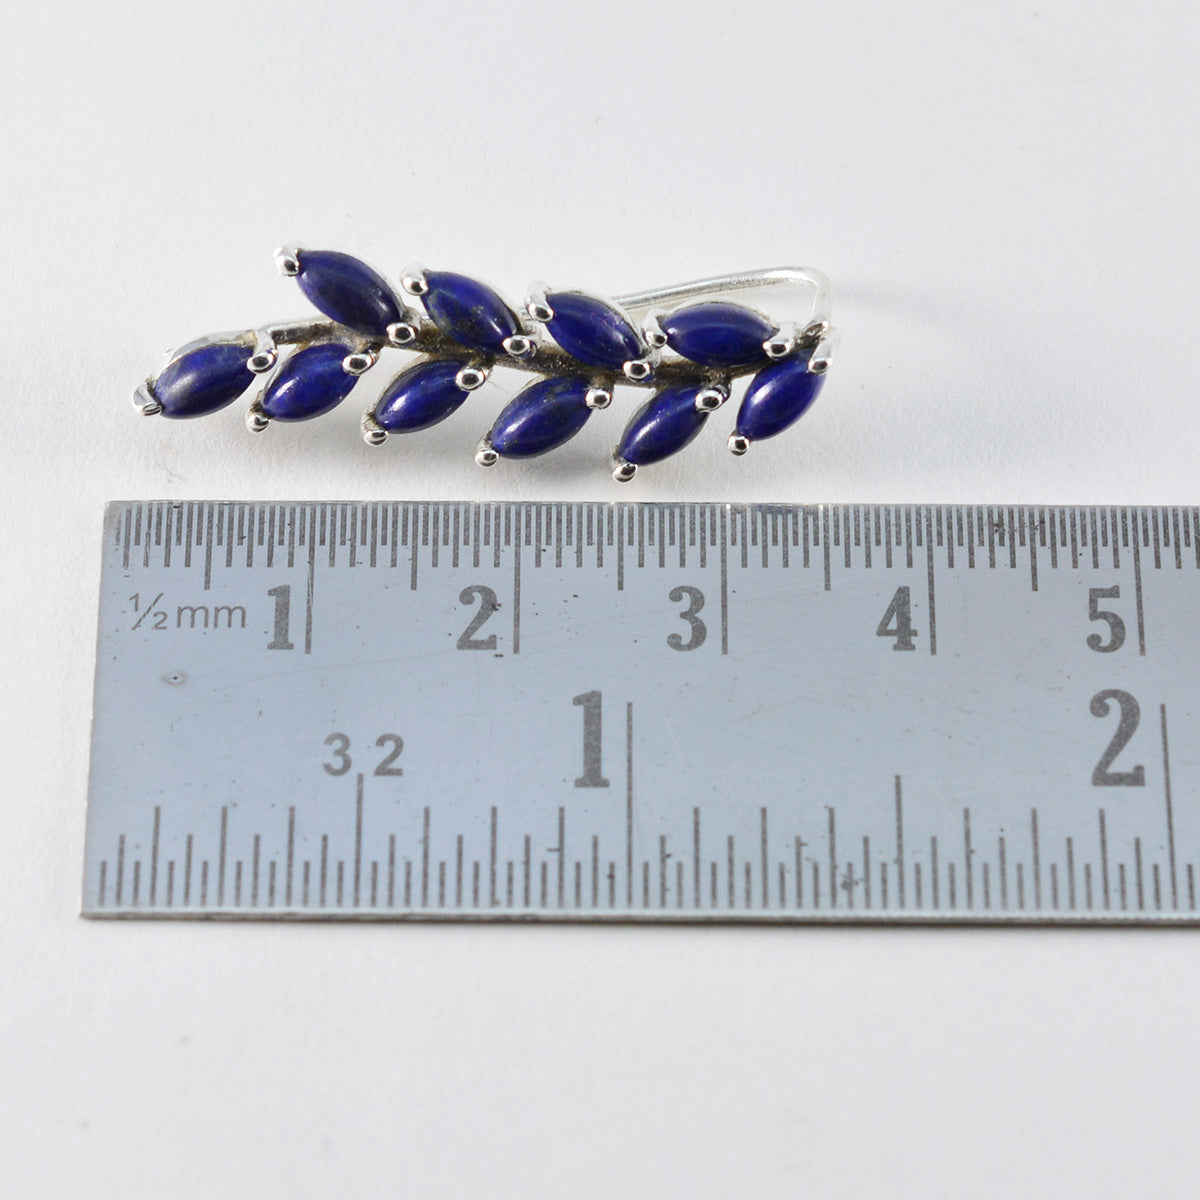 Riyo exquis 925 boucle d'oreille en argent sterling pour femme lapis lazuli boucle d'oreille réglage de la lunette boucle d'oreille bleue boucle d'oreille manchette